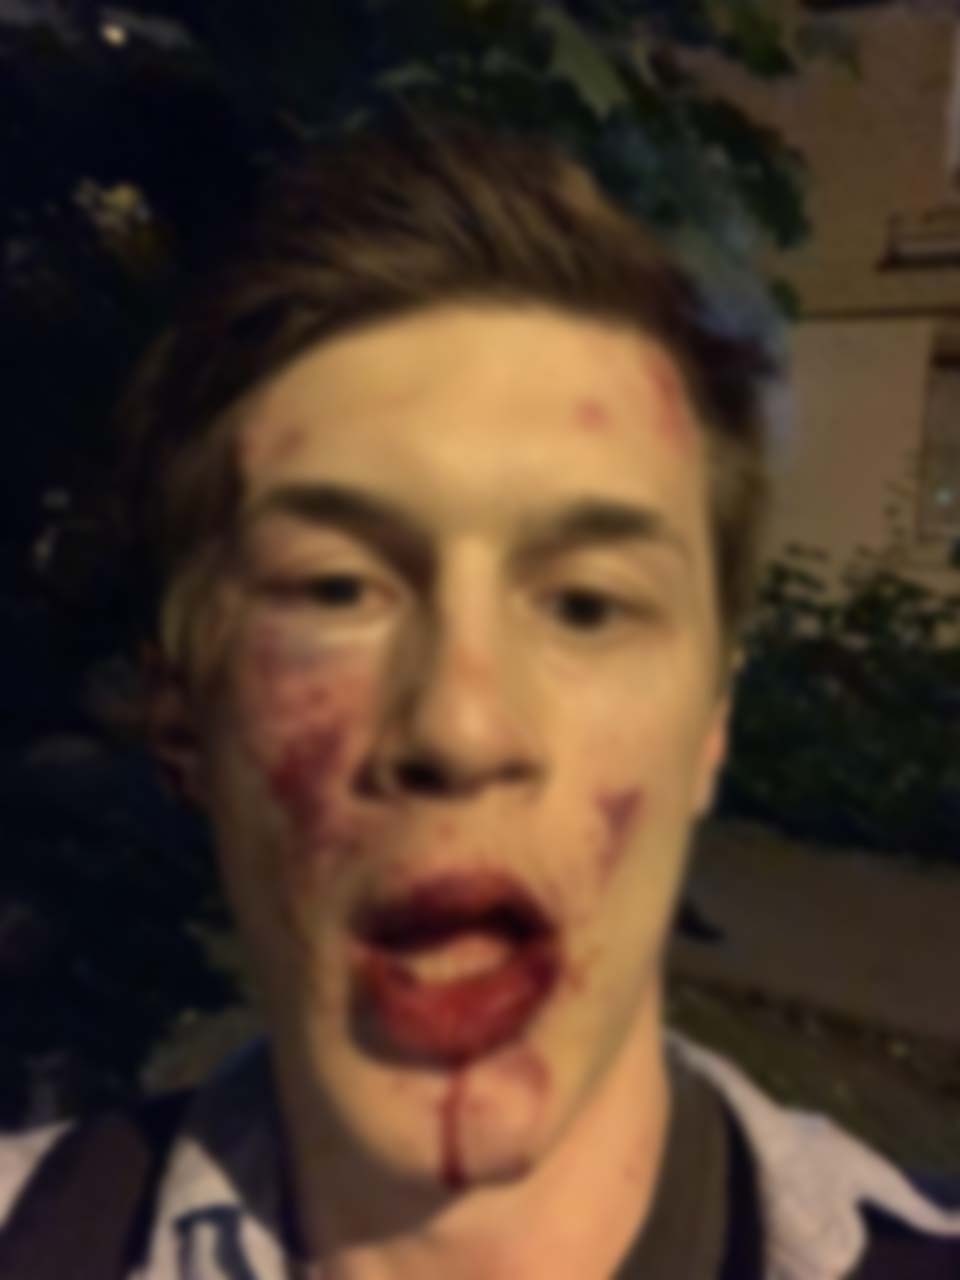 «Лицо у него прям всмятку». В Москве избили активиста Егора Жукова